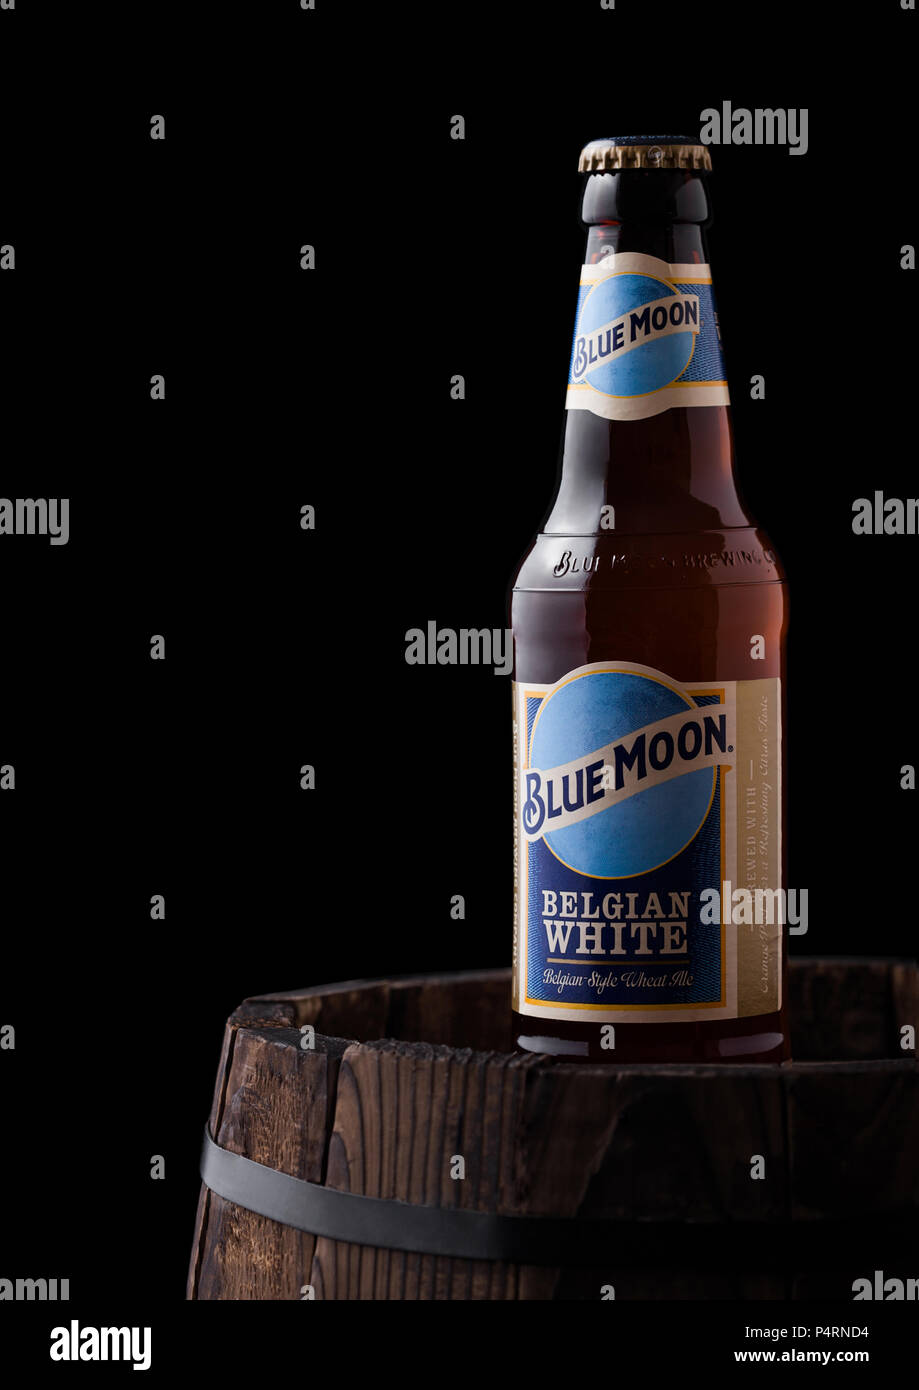 Londres, Reino Unido - 06 de junio de 2018: una botella de cerveza blanca belga Blue Moon, fabricada por MillerCoors viejo barril de madera sobre fondo negro. Foto de stock